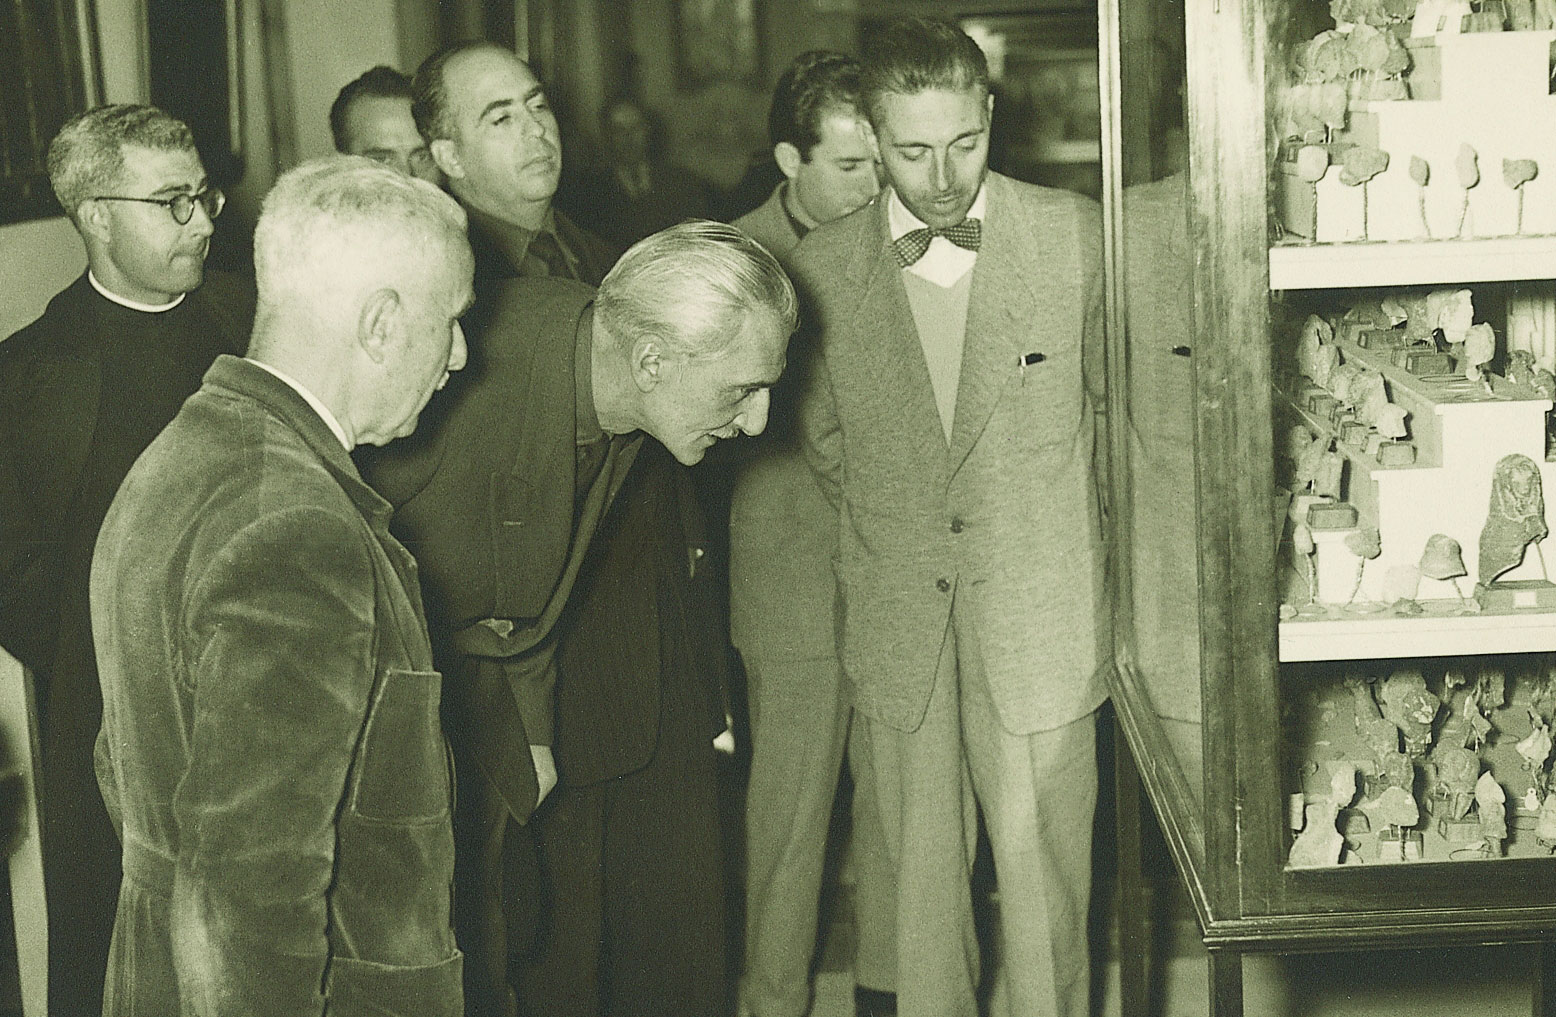 C. Visedo mostra l’exposició del Museu a unes autoritats (18/11/1955)